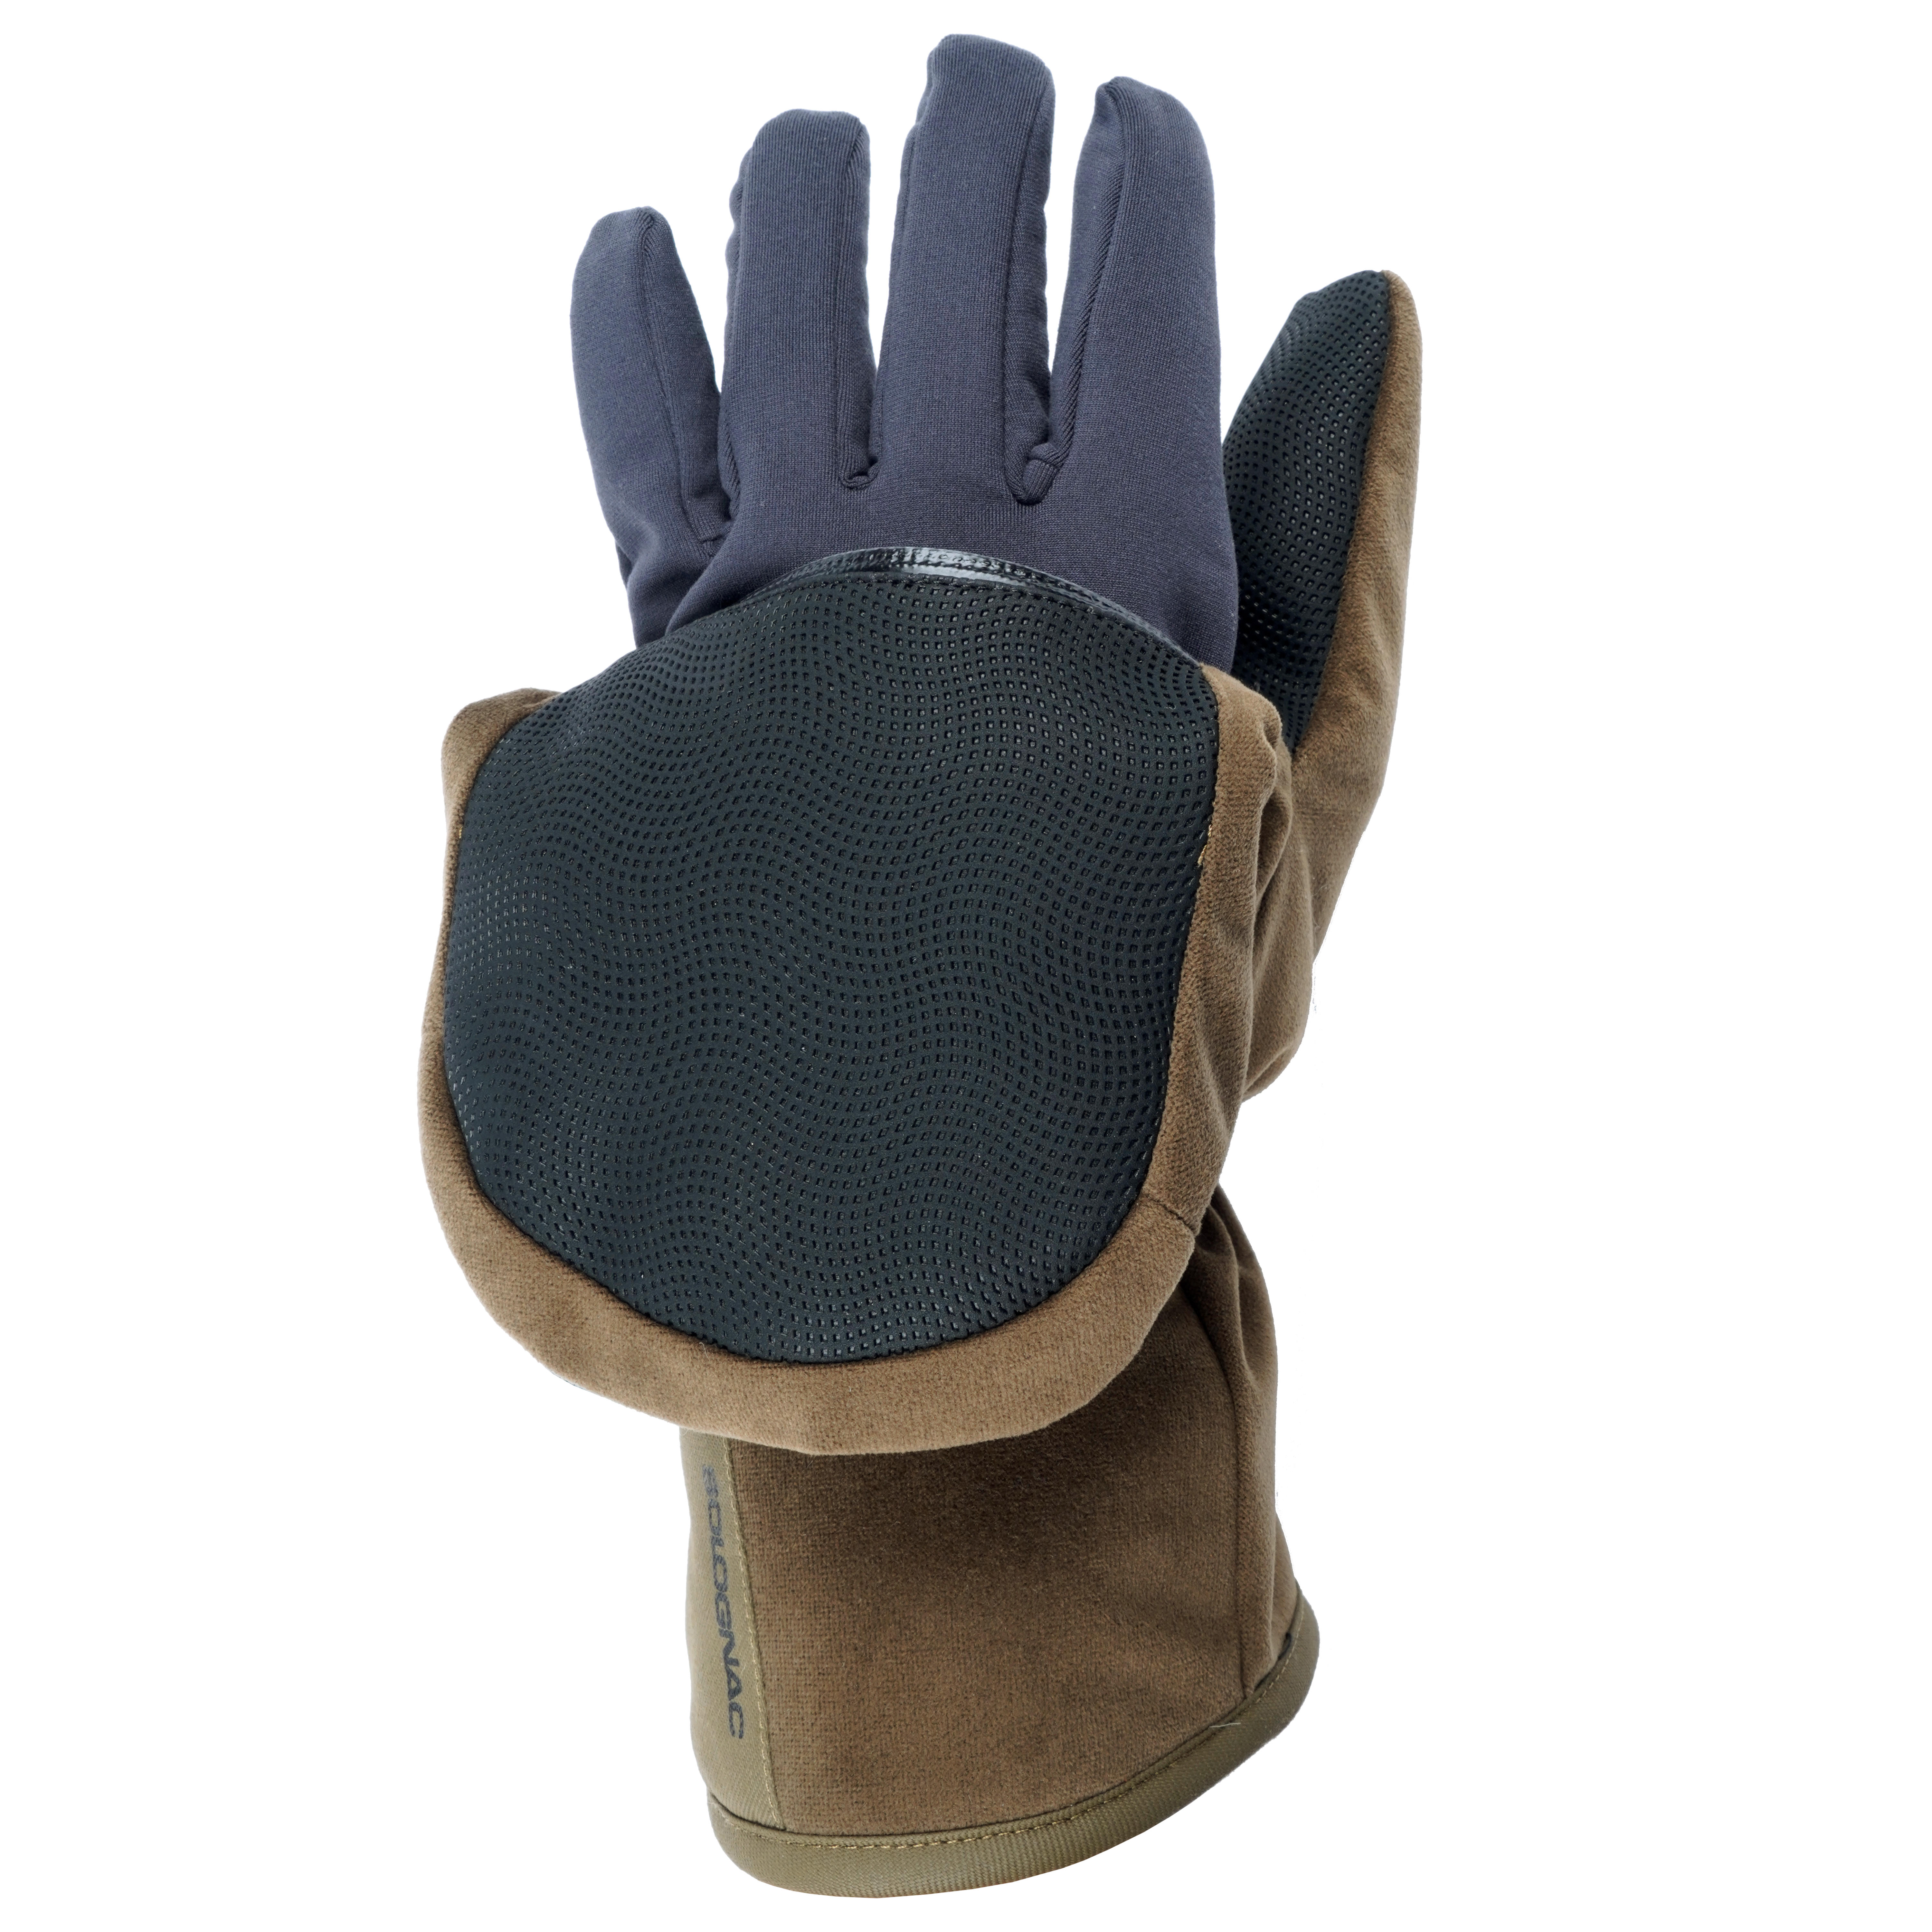 Accessoires Handschoenen & wanten Rijhandschoenen Heren Lederen Vingerloze Handschoen met Gel Palm 